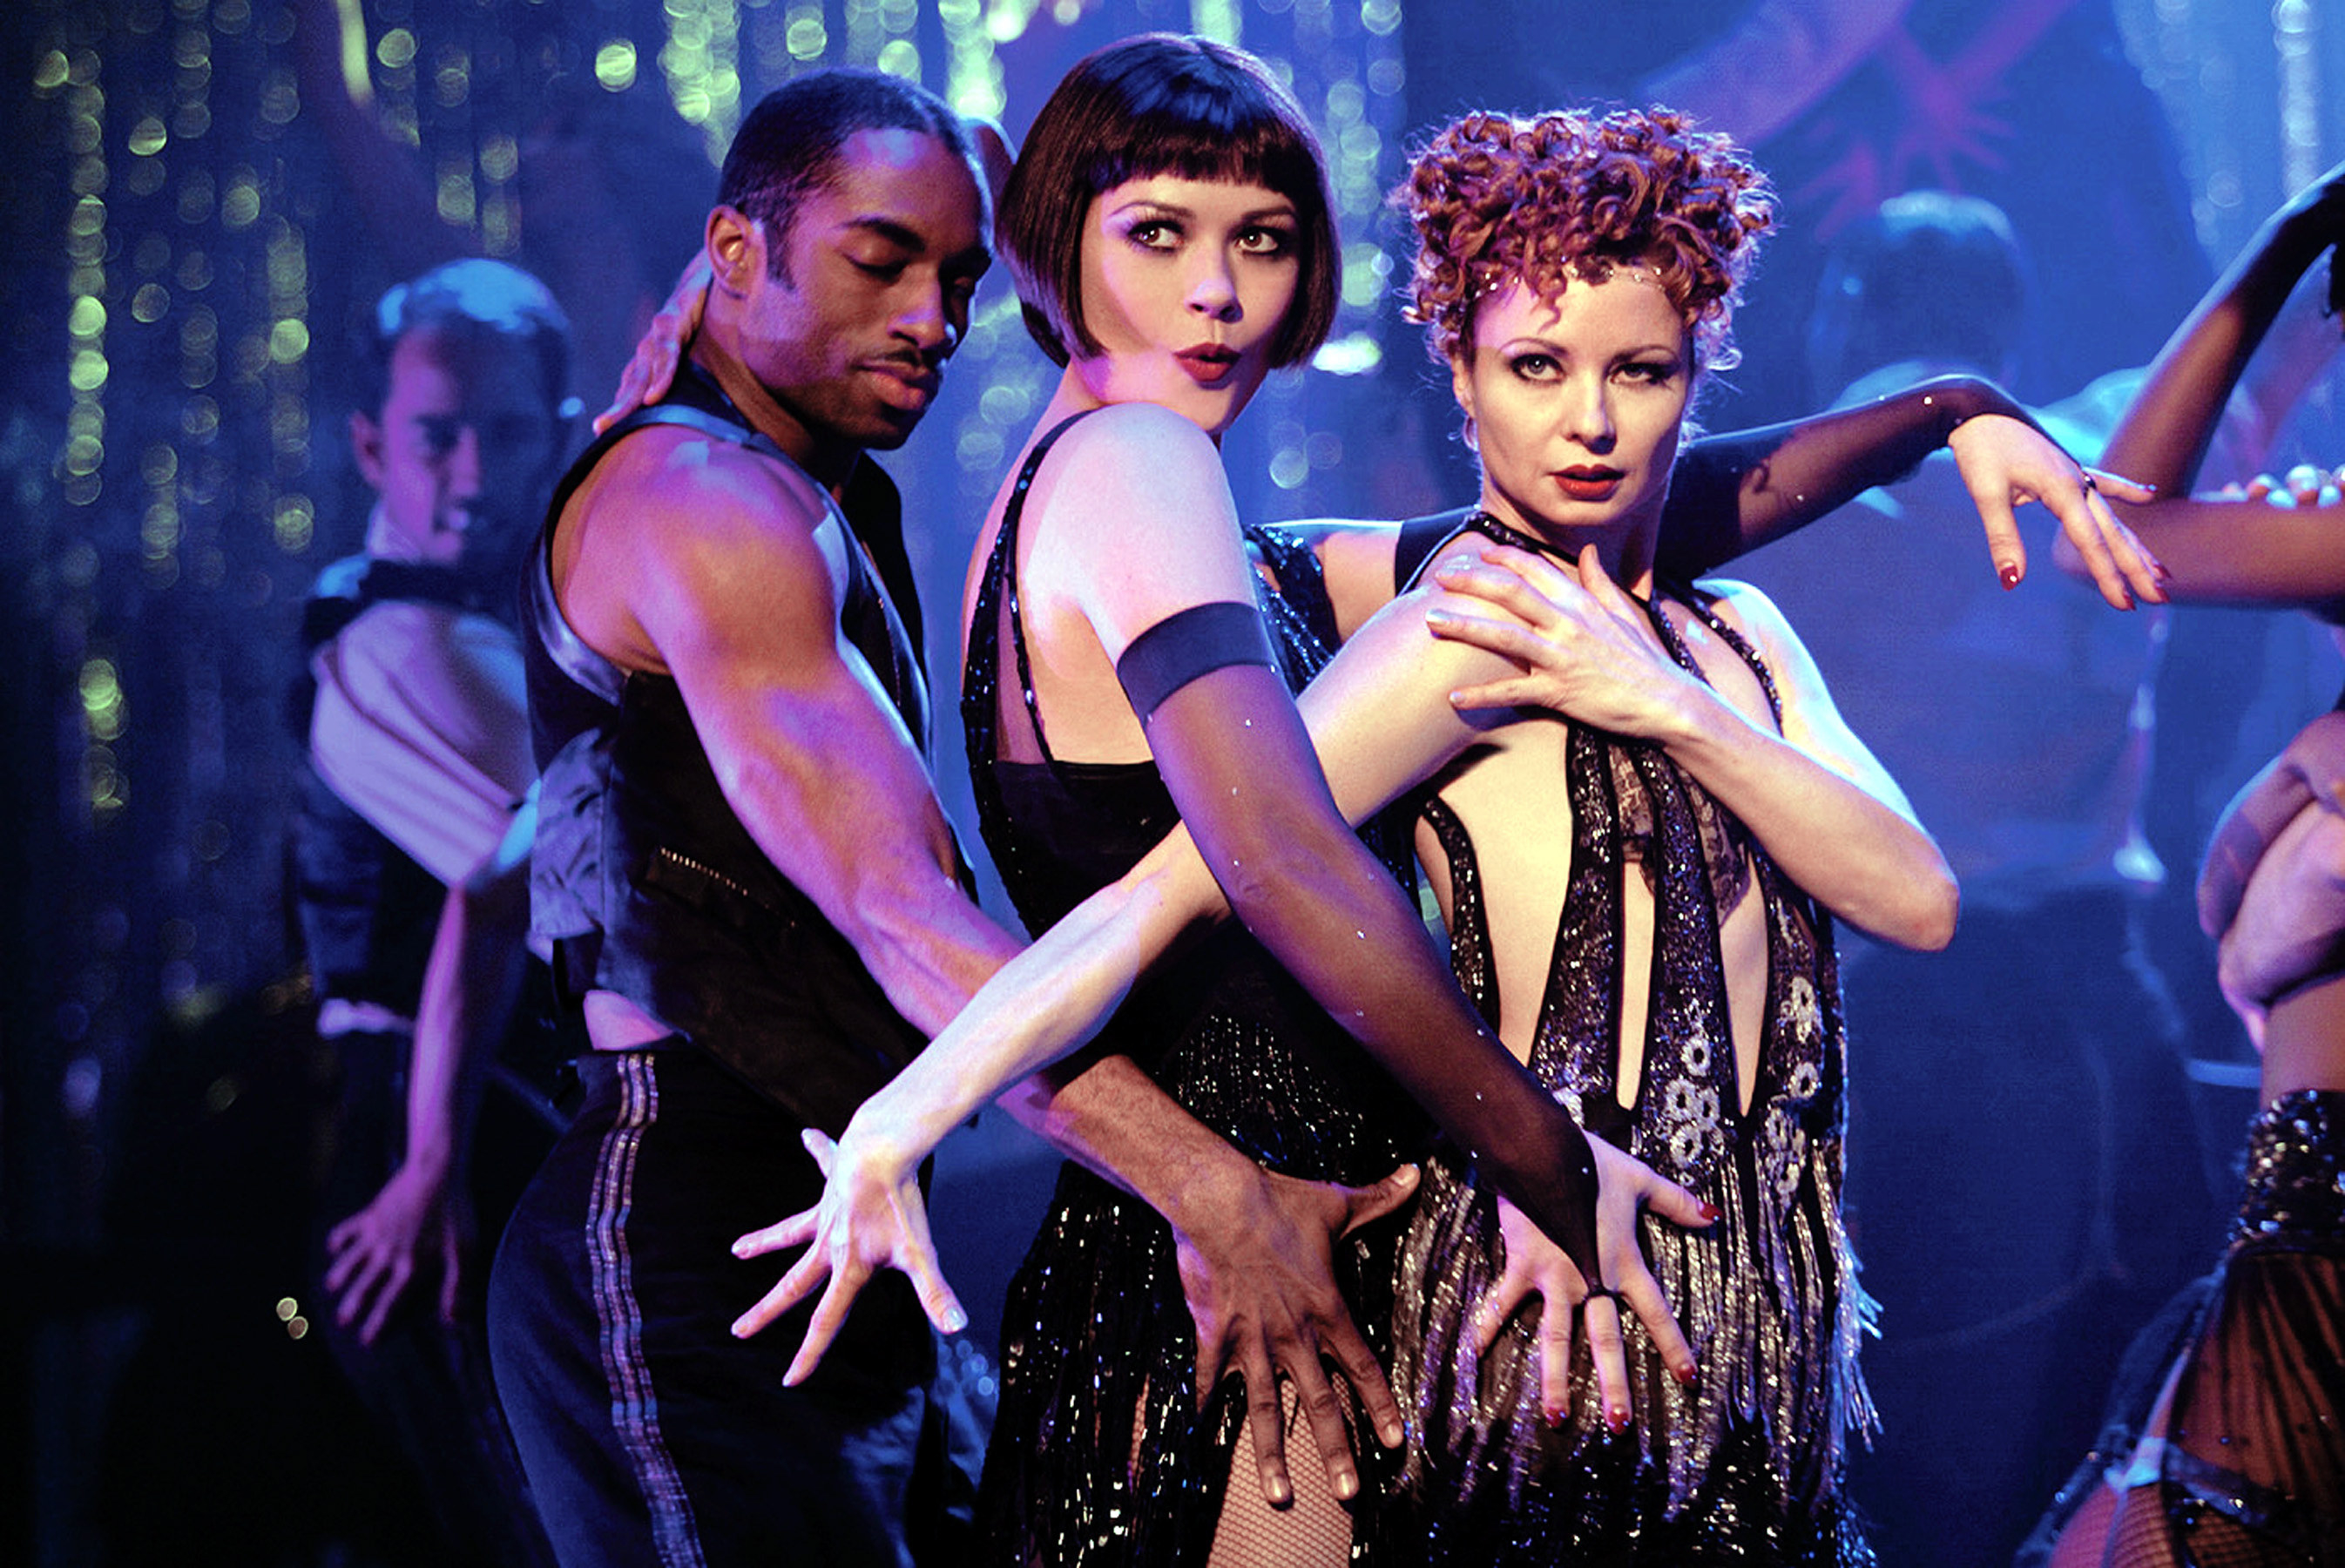 Catherine Zeta-Jones onstage with two dancers